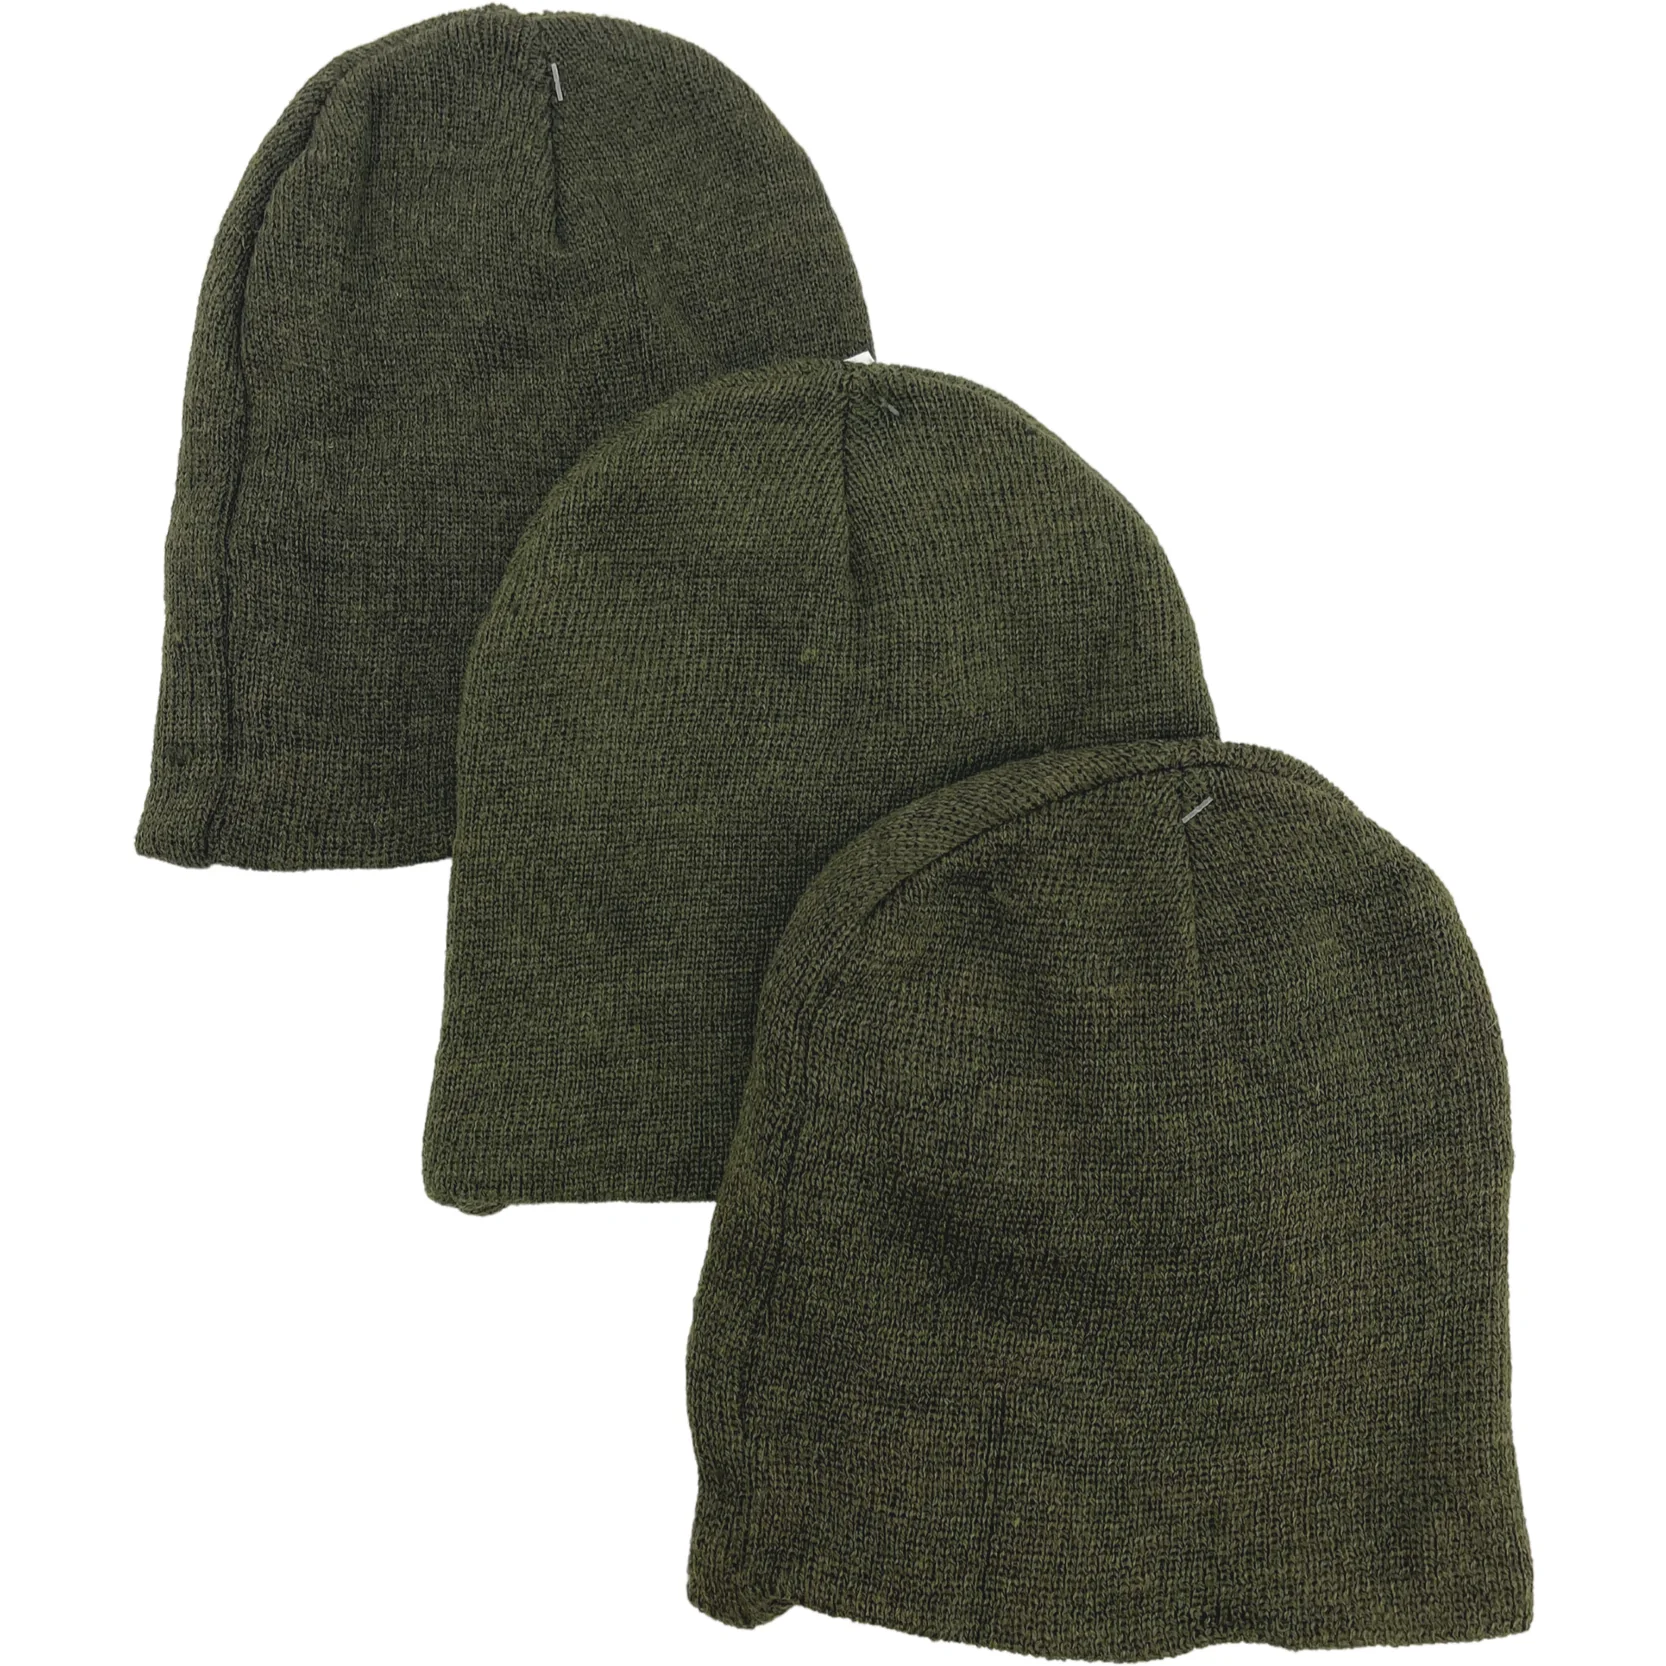 Children's Winter Hat / 3 Pack / Green / Winter Toque / One Size